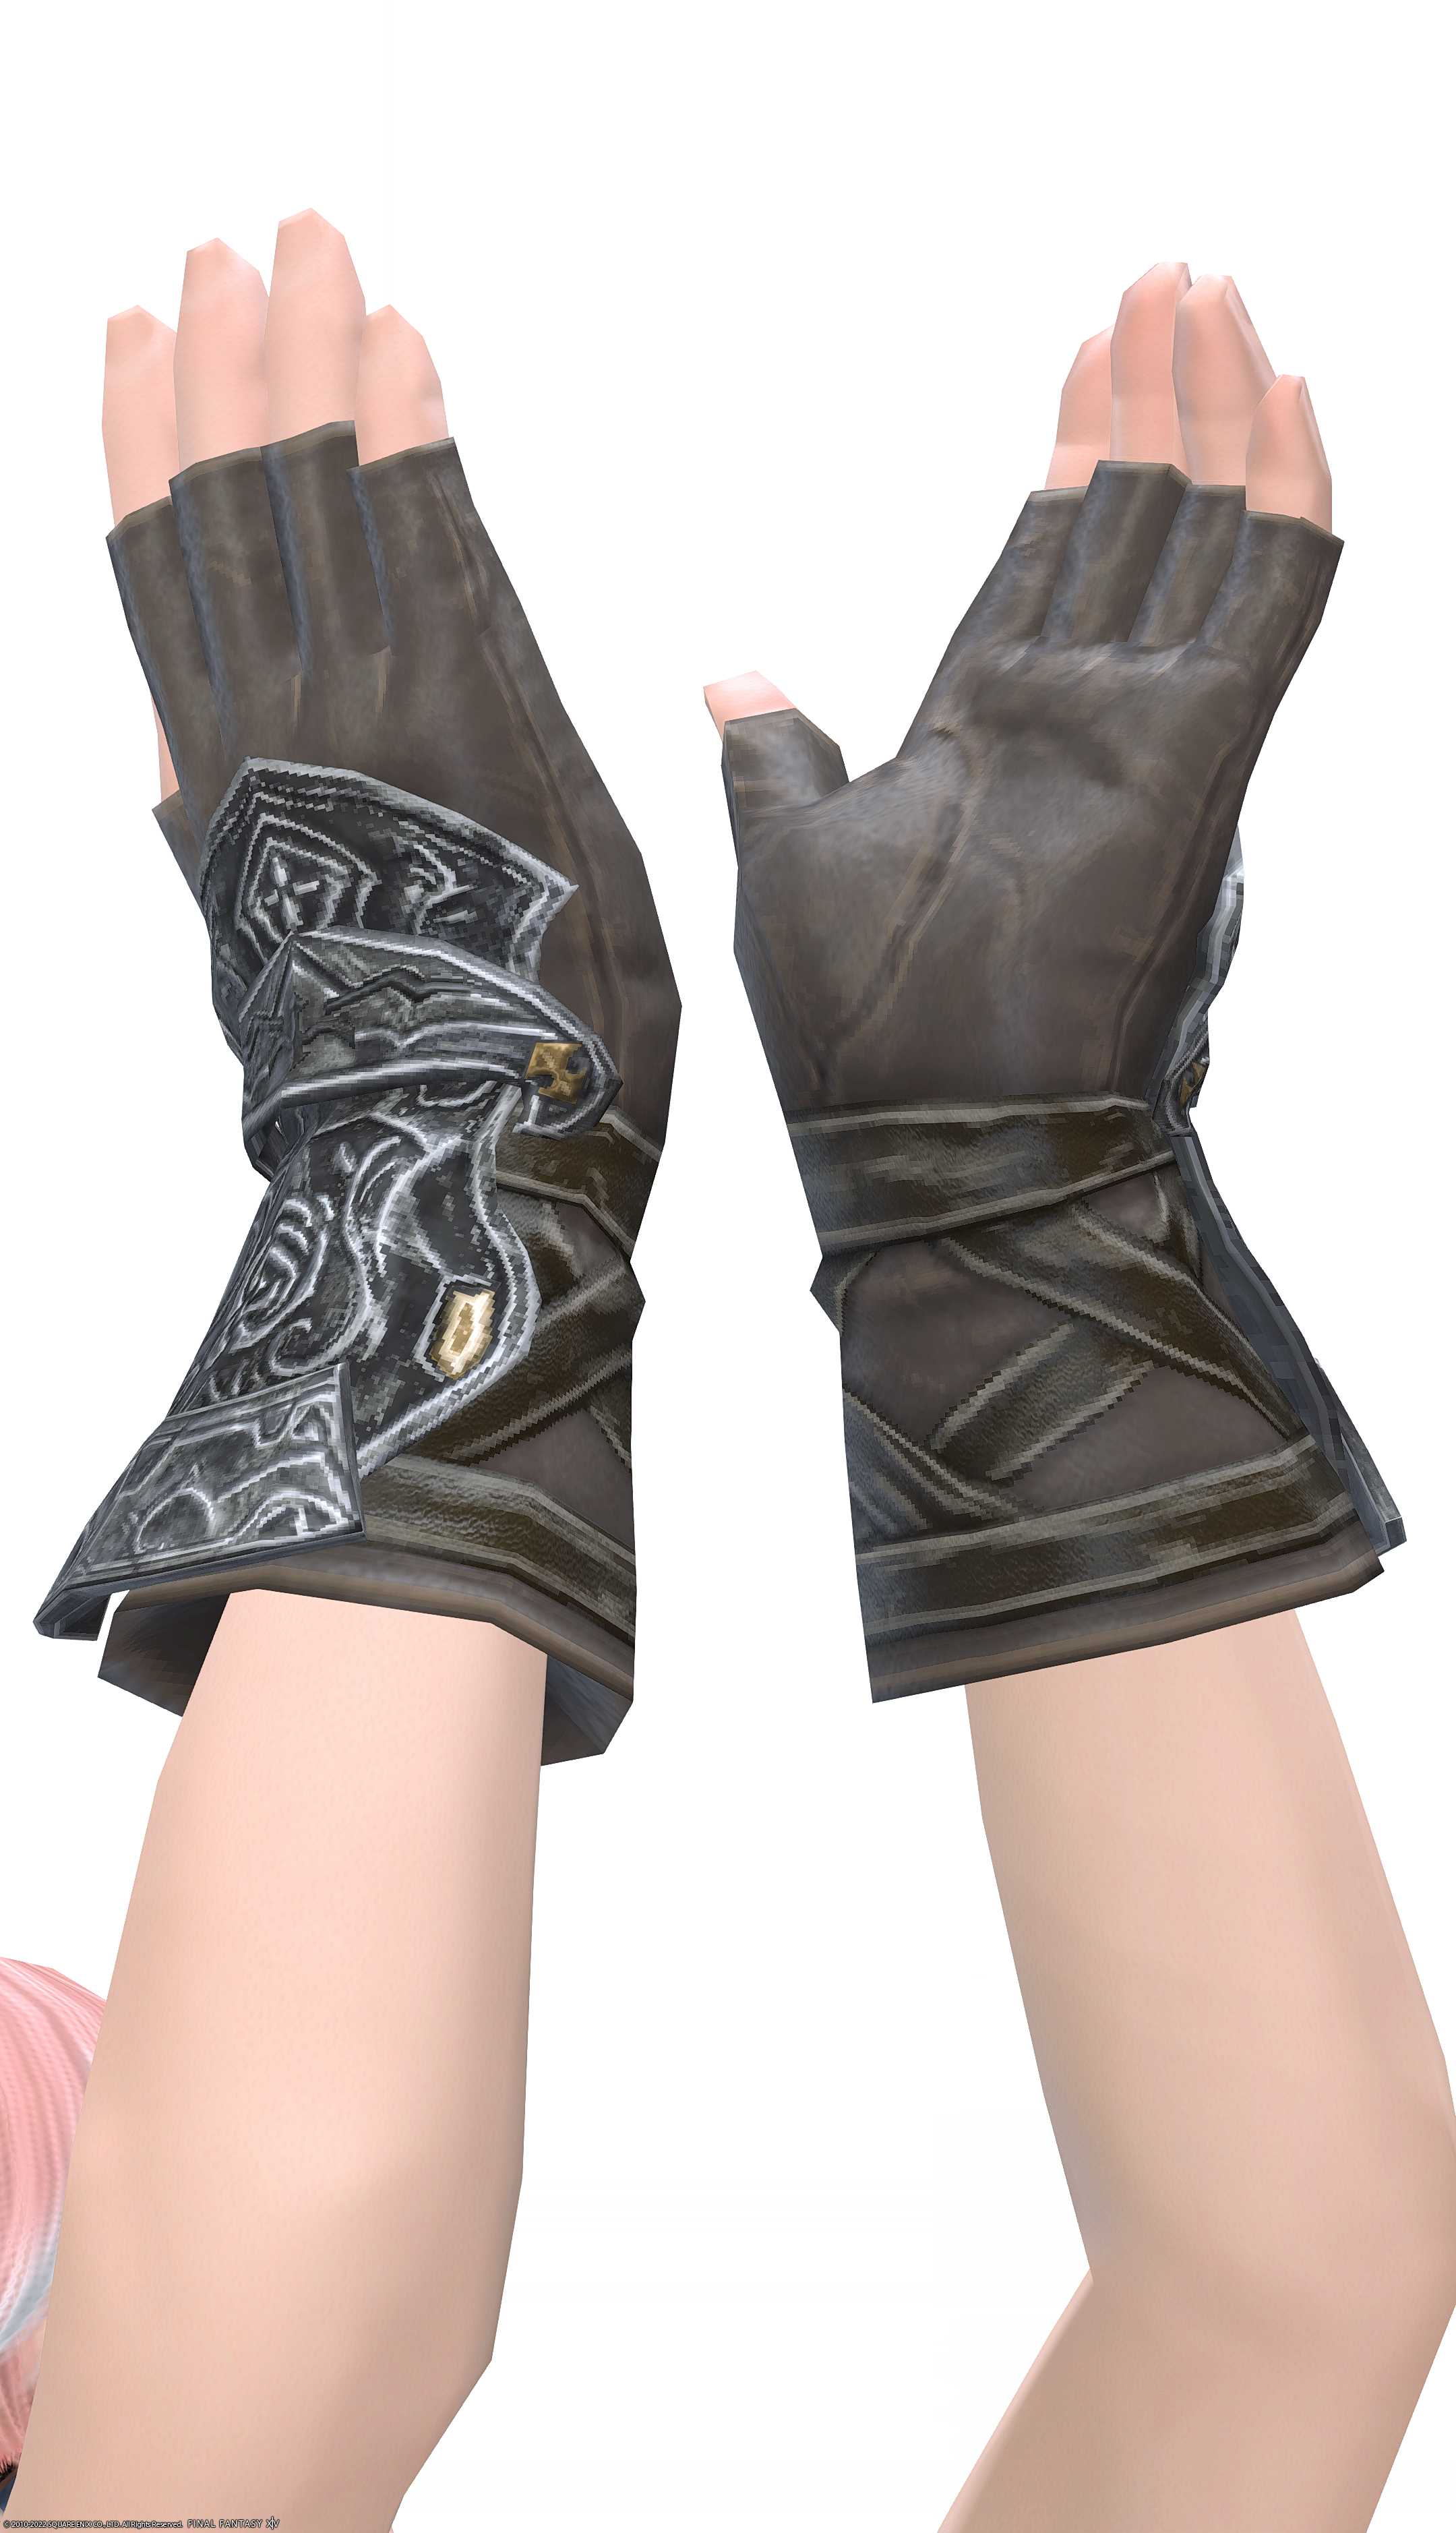 エデンモーン・ストライカーフィンガレスグローブ | FF14ミラプリ - Edenmorn Fingerless Gloves of Striking - 篭手/手袋/フィンガレス